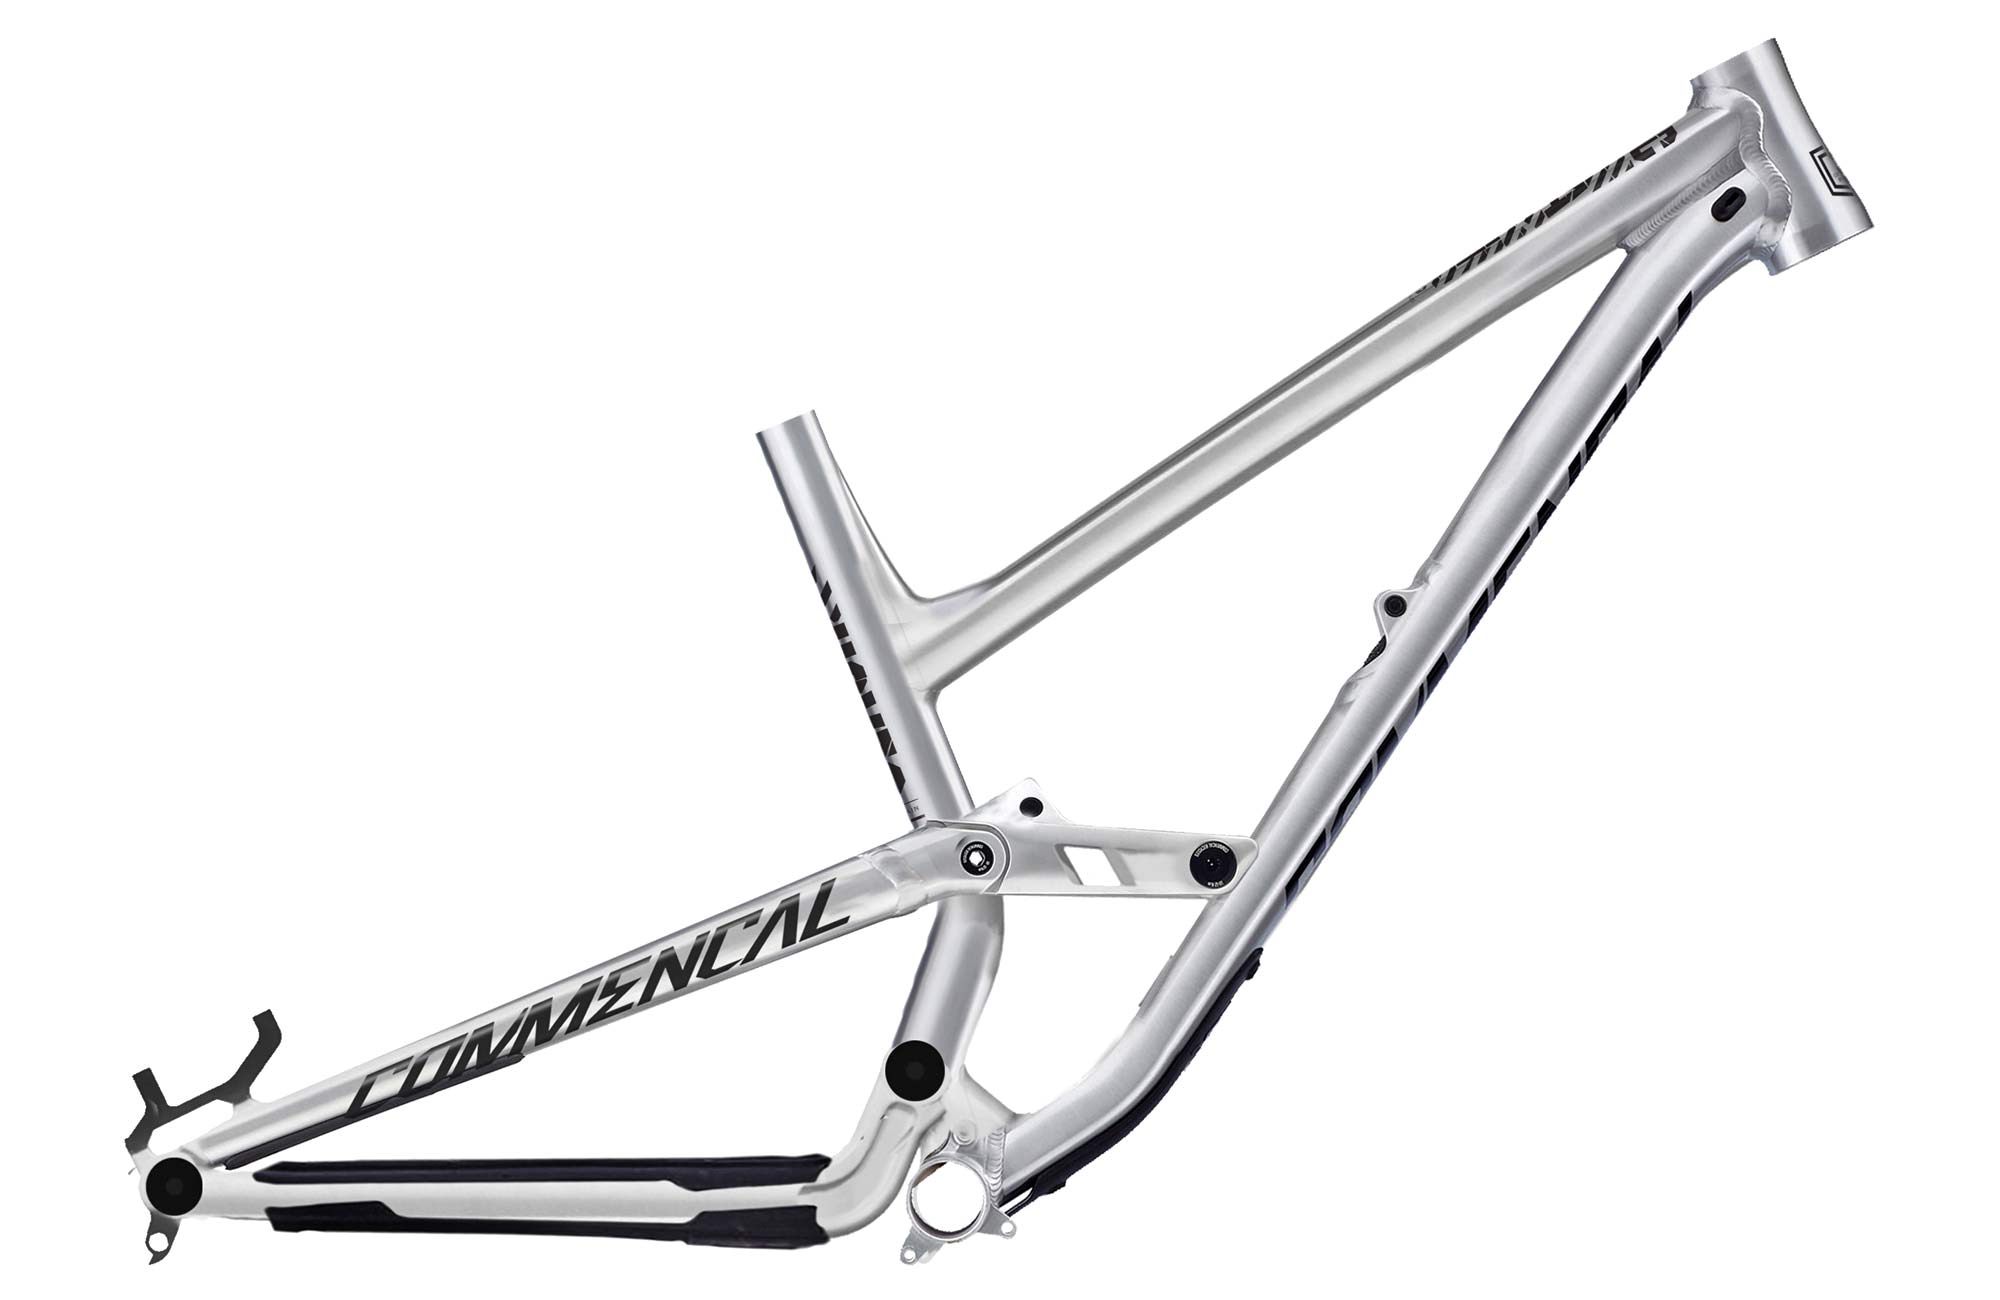 2019 Commencal Clash affordable aluminum alloy 165mm single crown enduro park bike